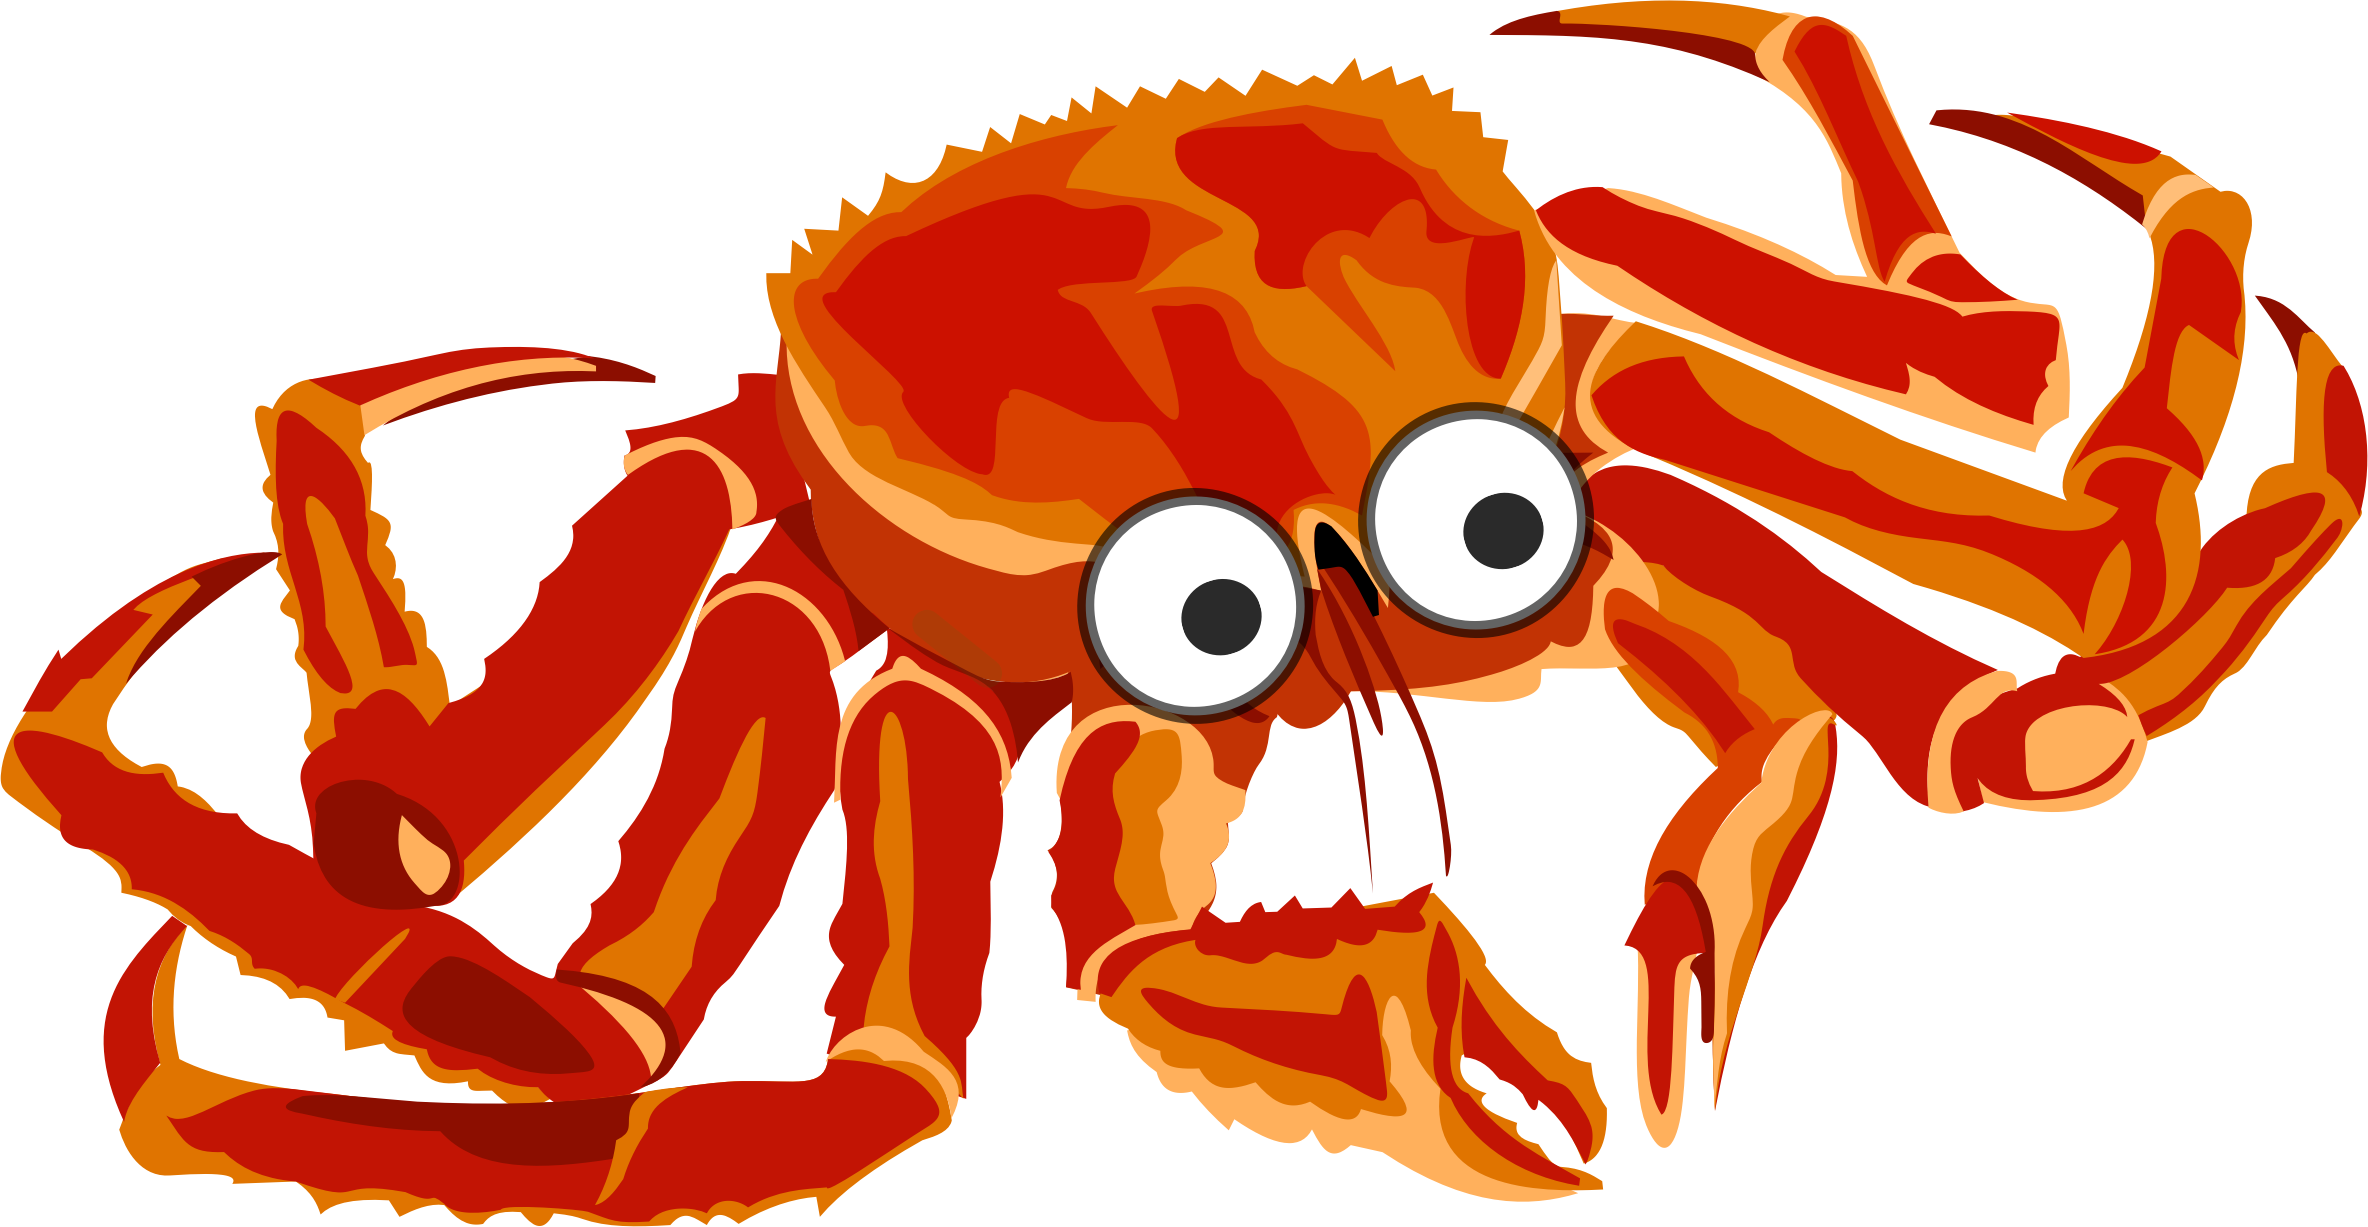 Big Image - Clip Art Of Crab (2368x1227)